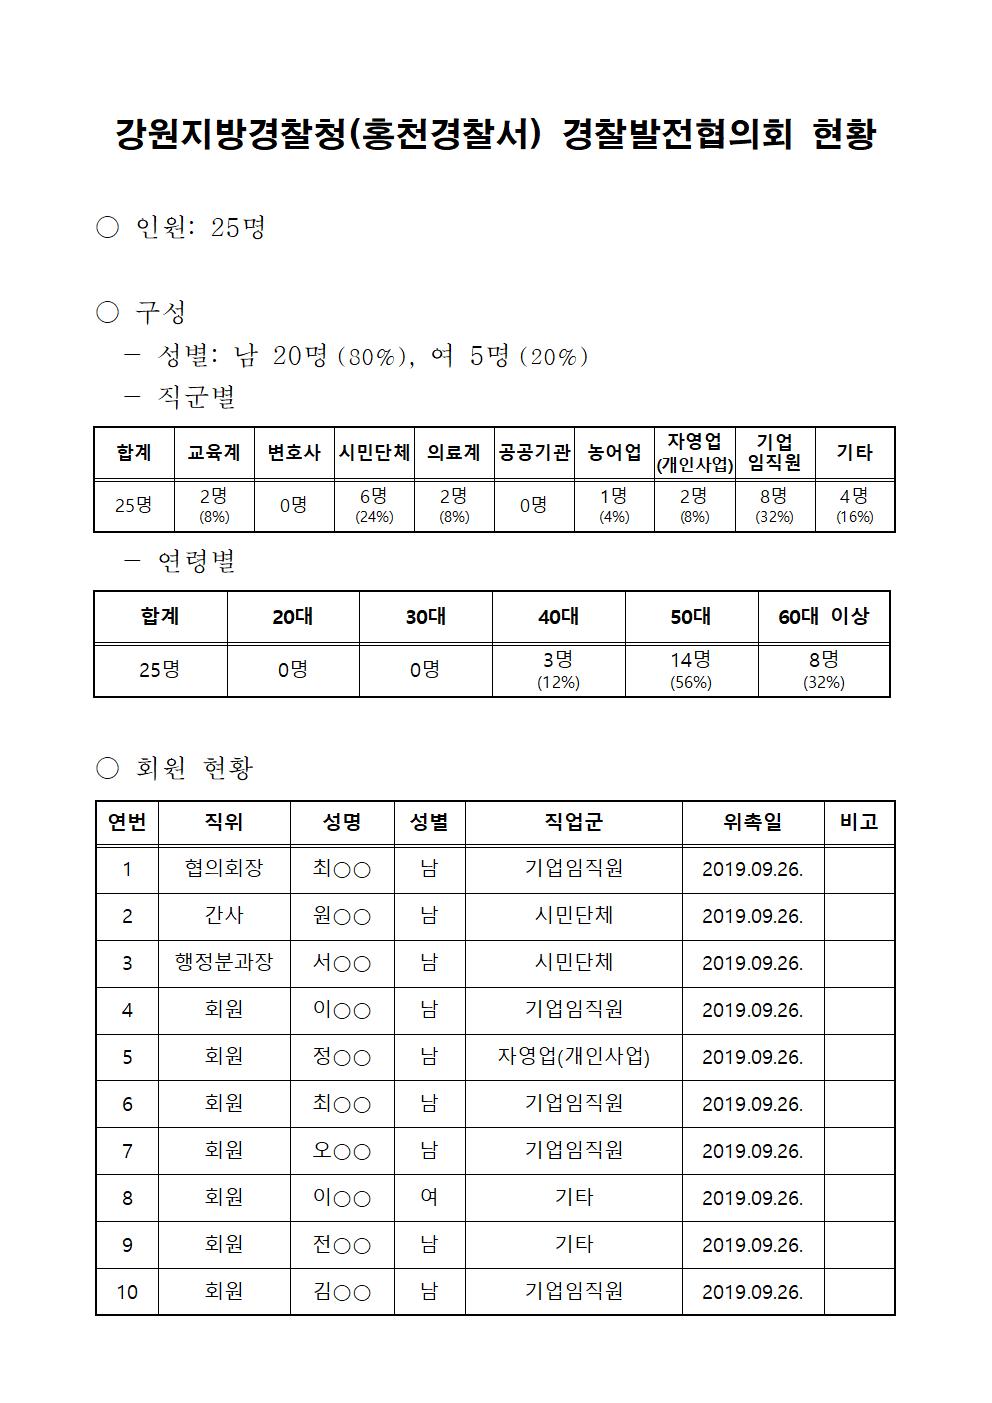 홍천경찰서 경찰발전협의회 현황-경발협구성현황001